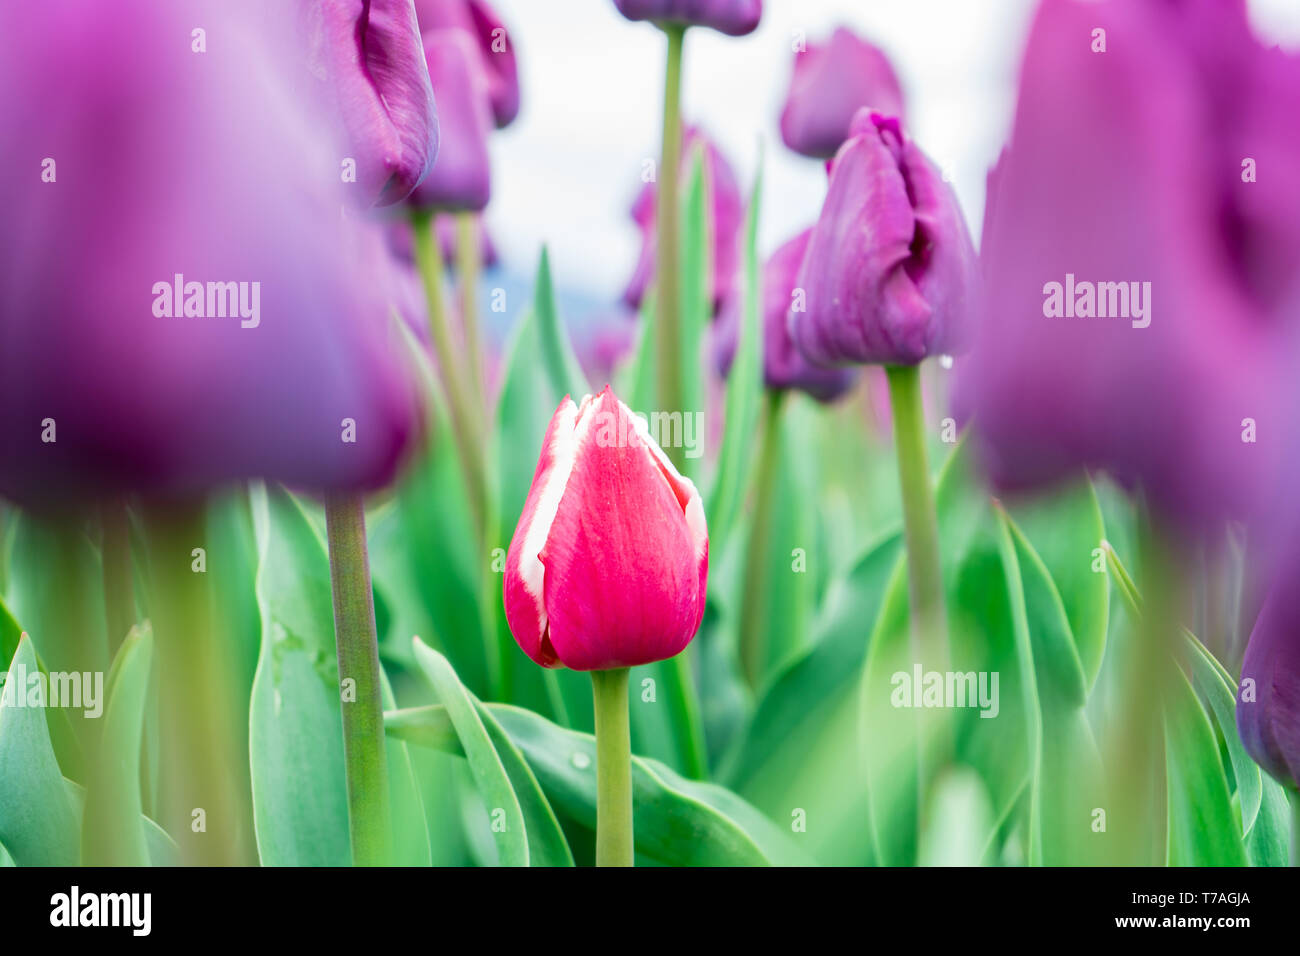 Bel rosso e bianco garden tulip formando tra campo di tulipani viola (trionfo tulipani). Colore verde brillante foglie e steli di fiori che mostra. Foto Stock